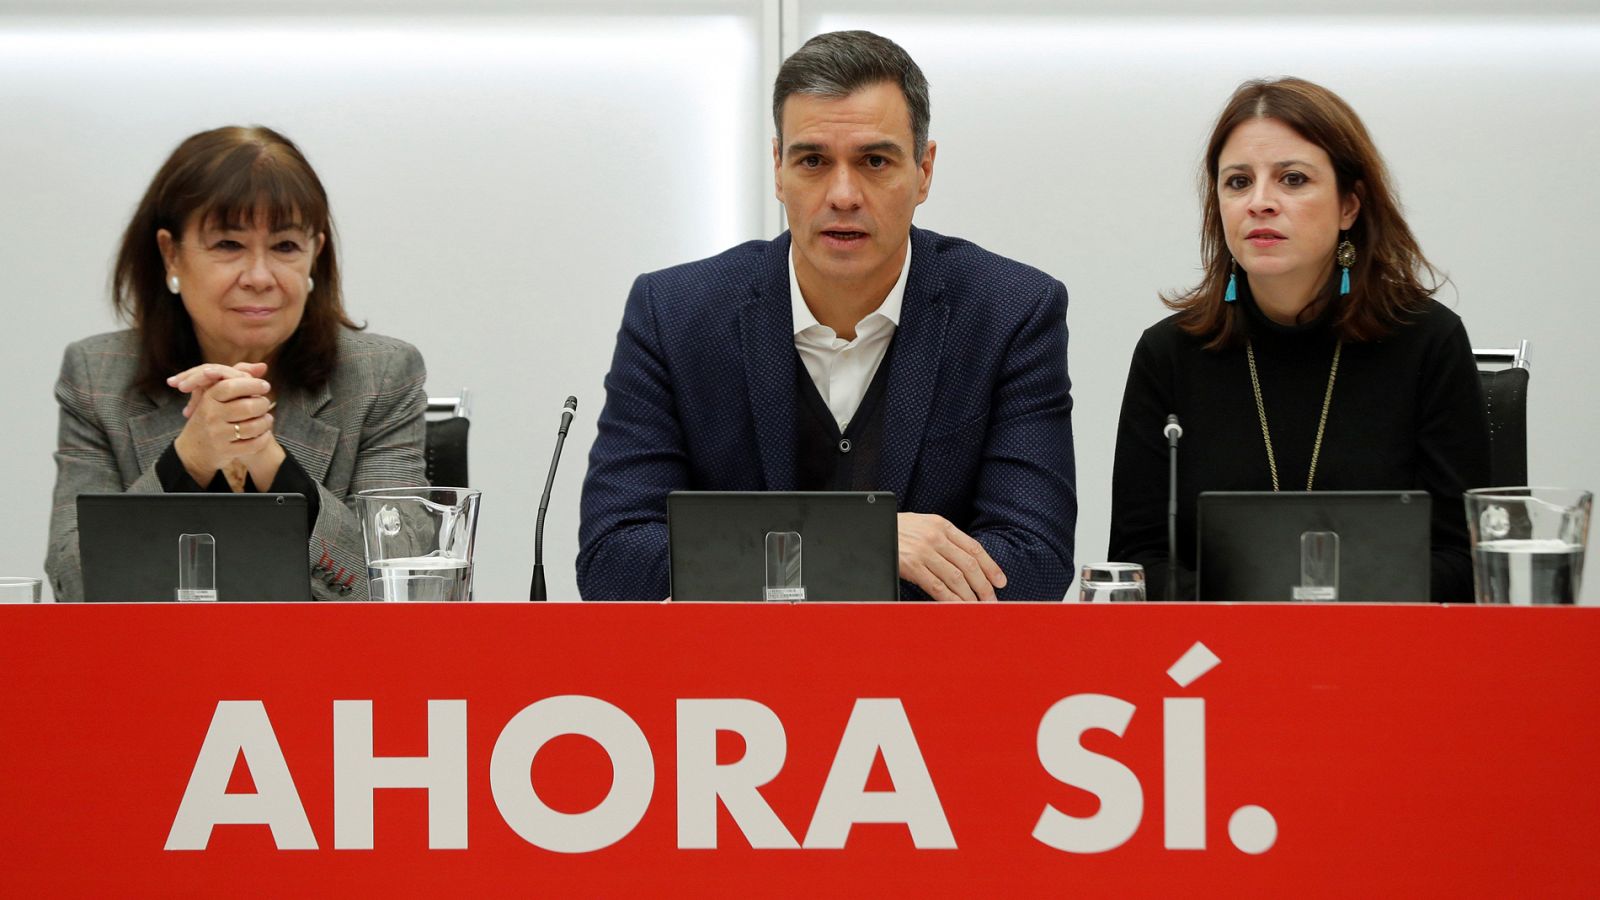 Elecciones generales | El bloqueo persiste tras las elecciones: ¿Qué opciones tiene Sánchez para gobernar?- RTVE.es